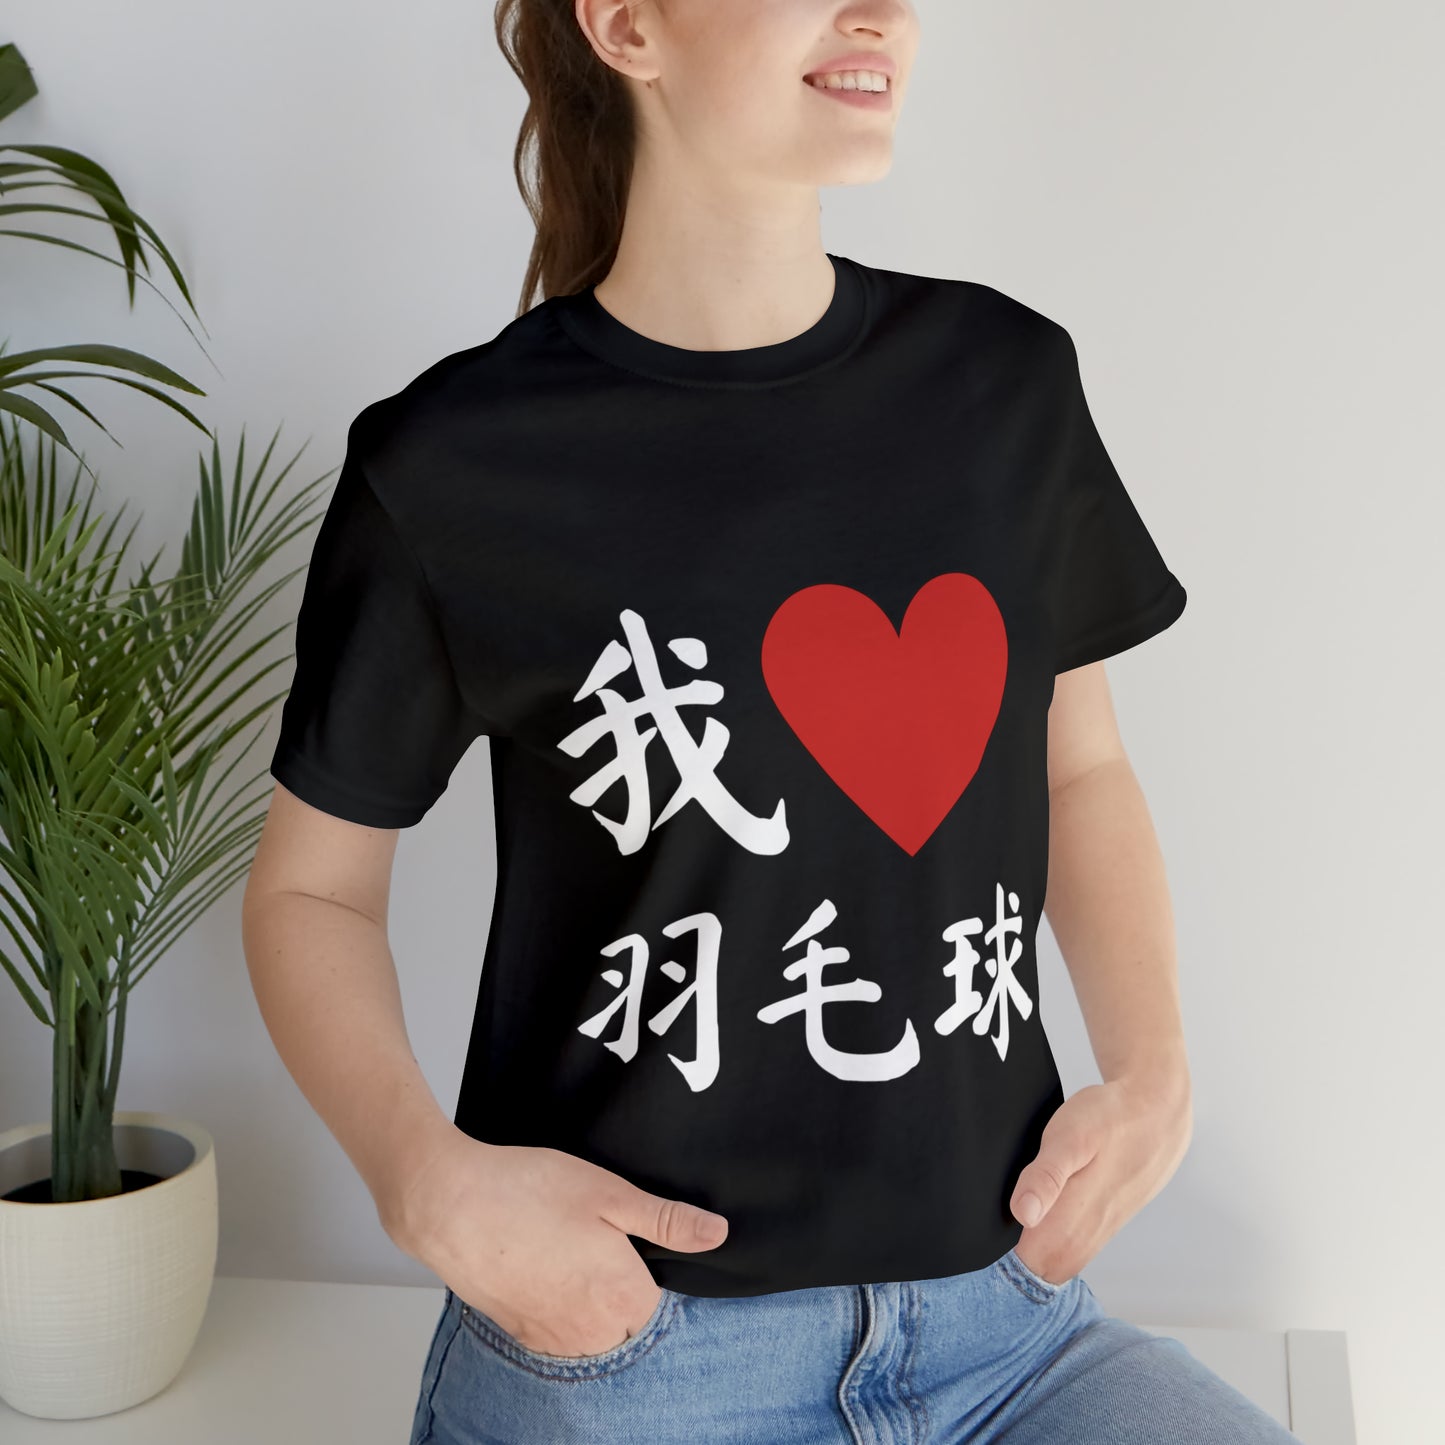 我❤️羽毛球 (I ❤️ Badminton in Chinese) Tee!